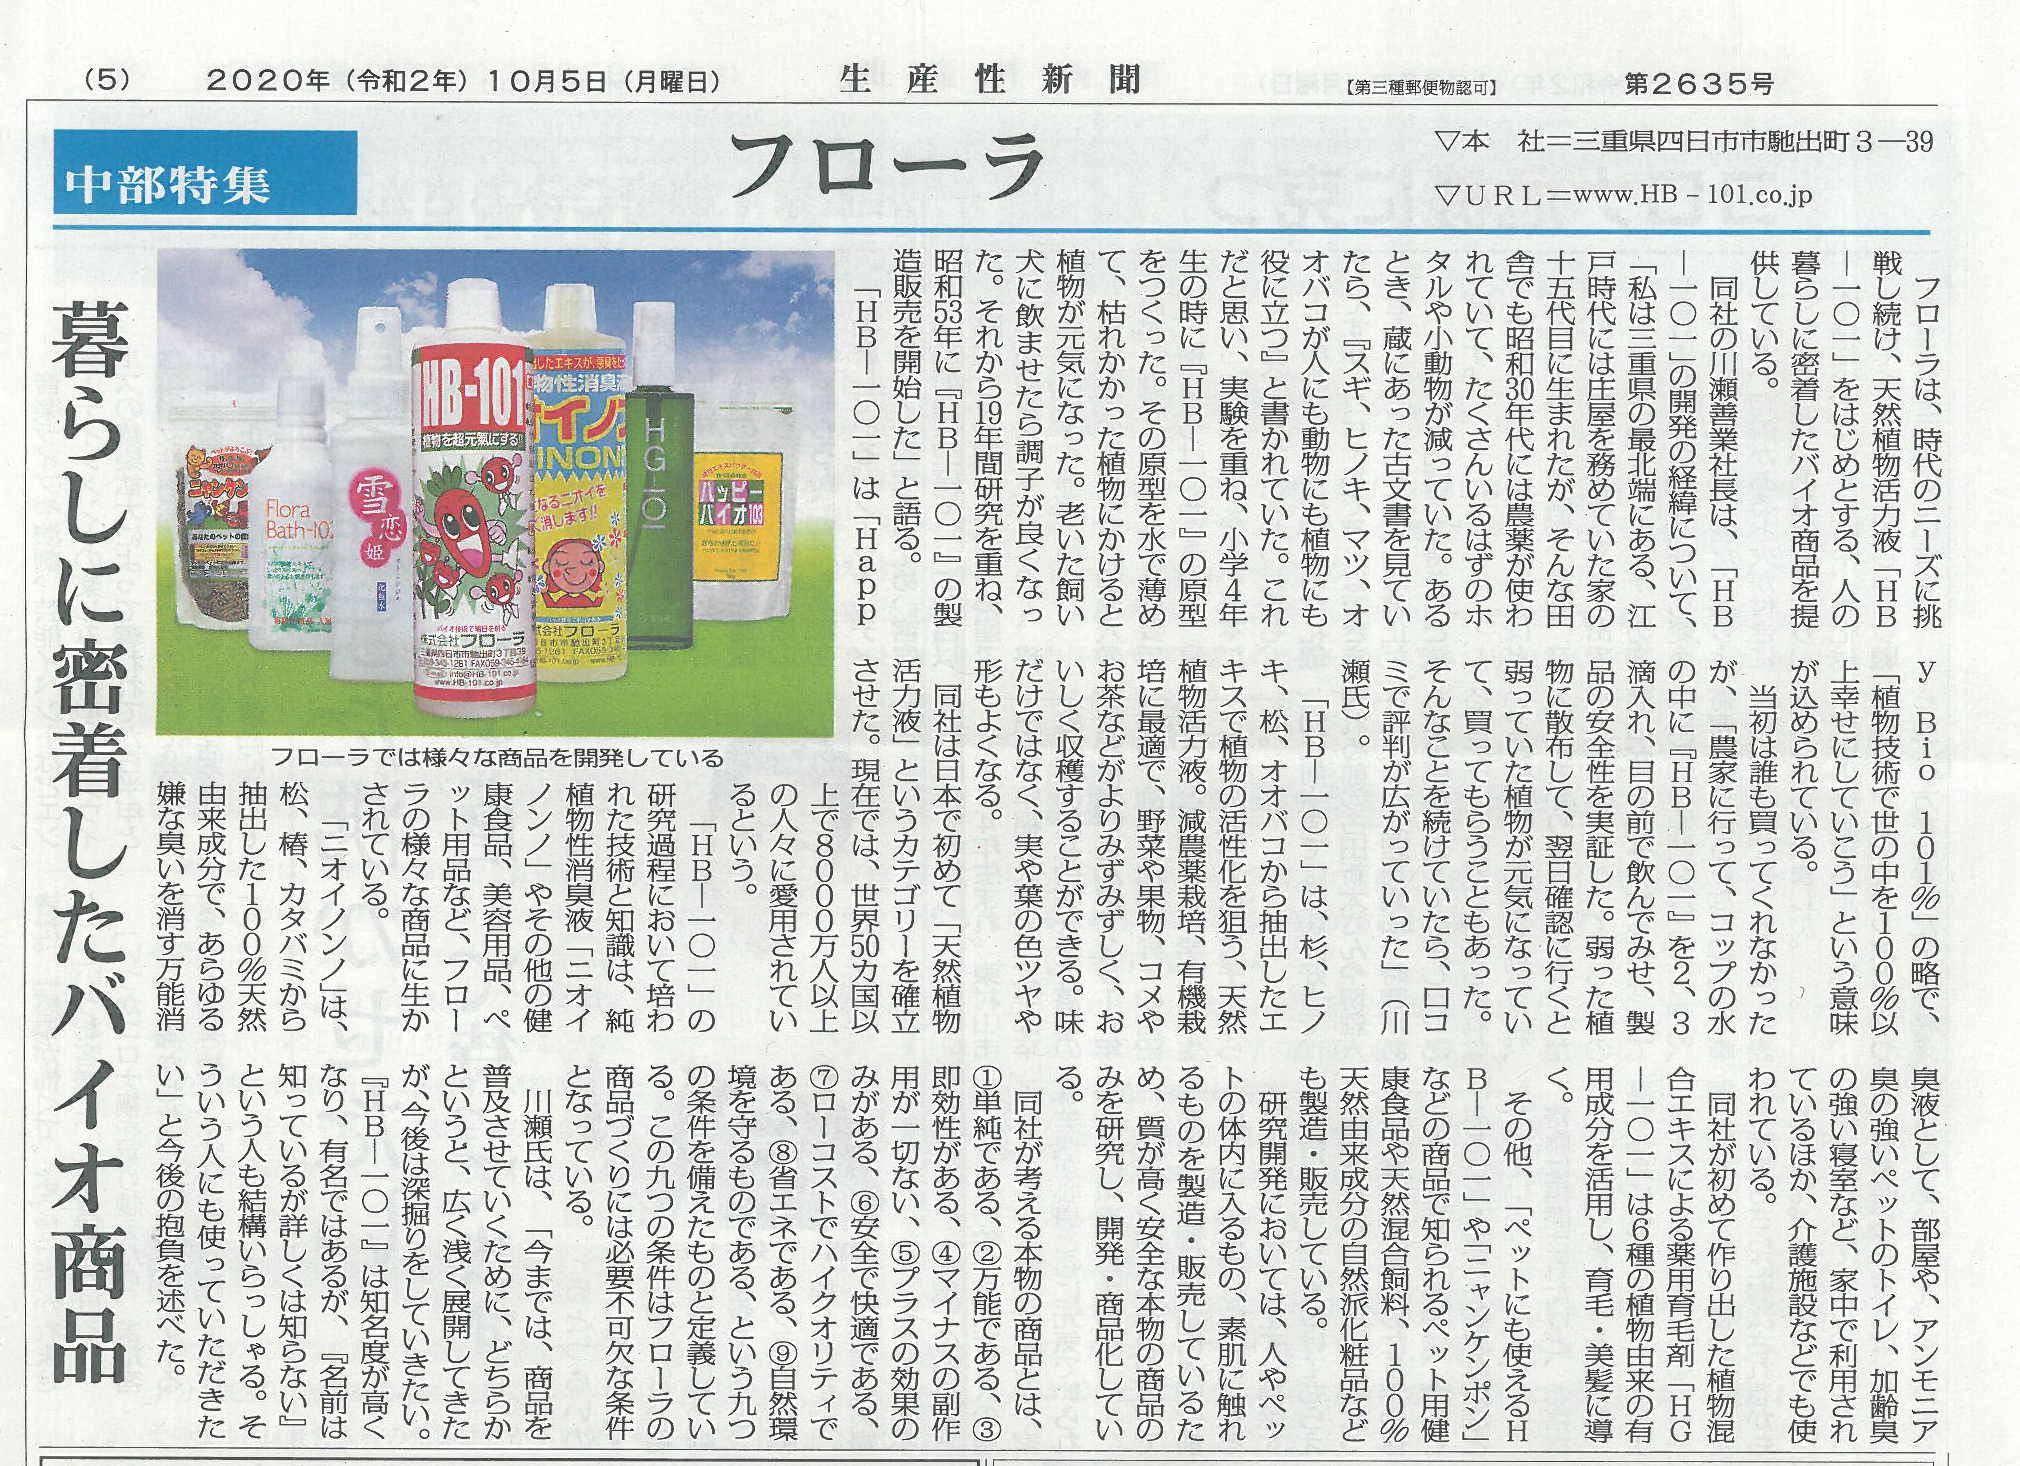 日本生産新聞に弊社が掲載されました。